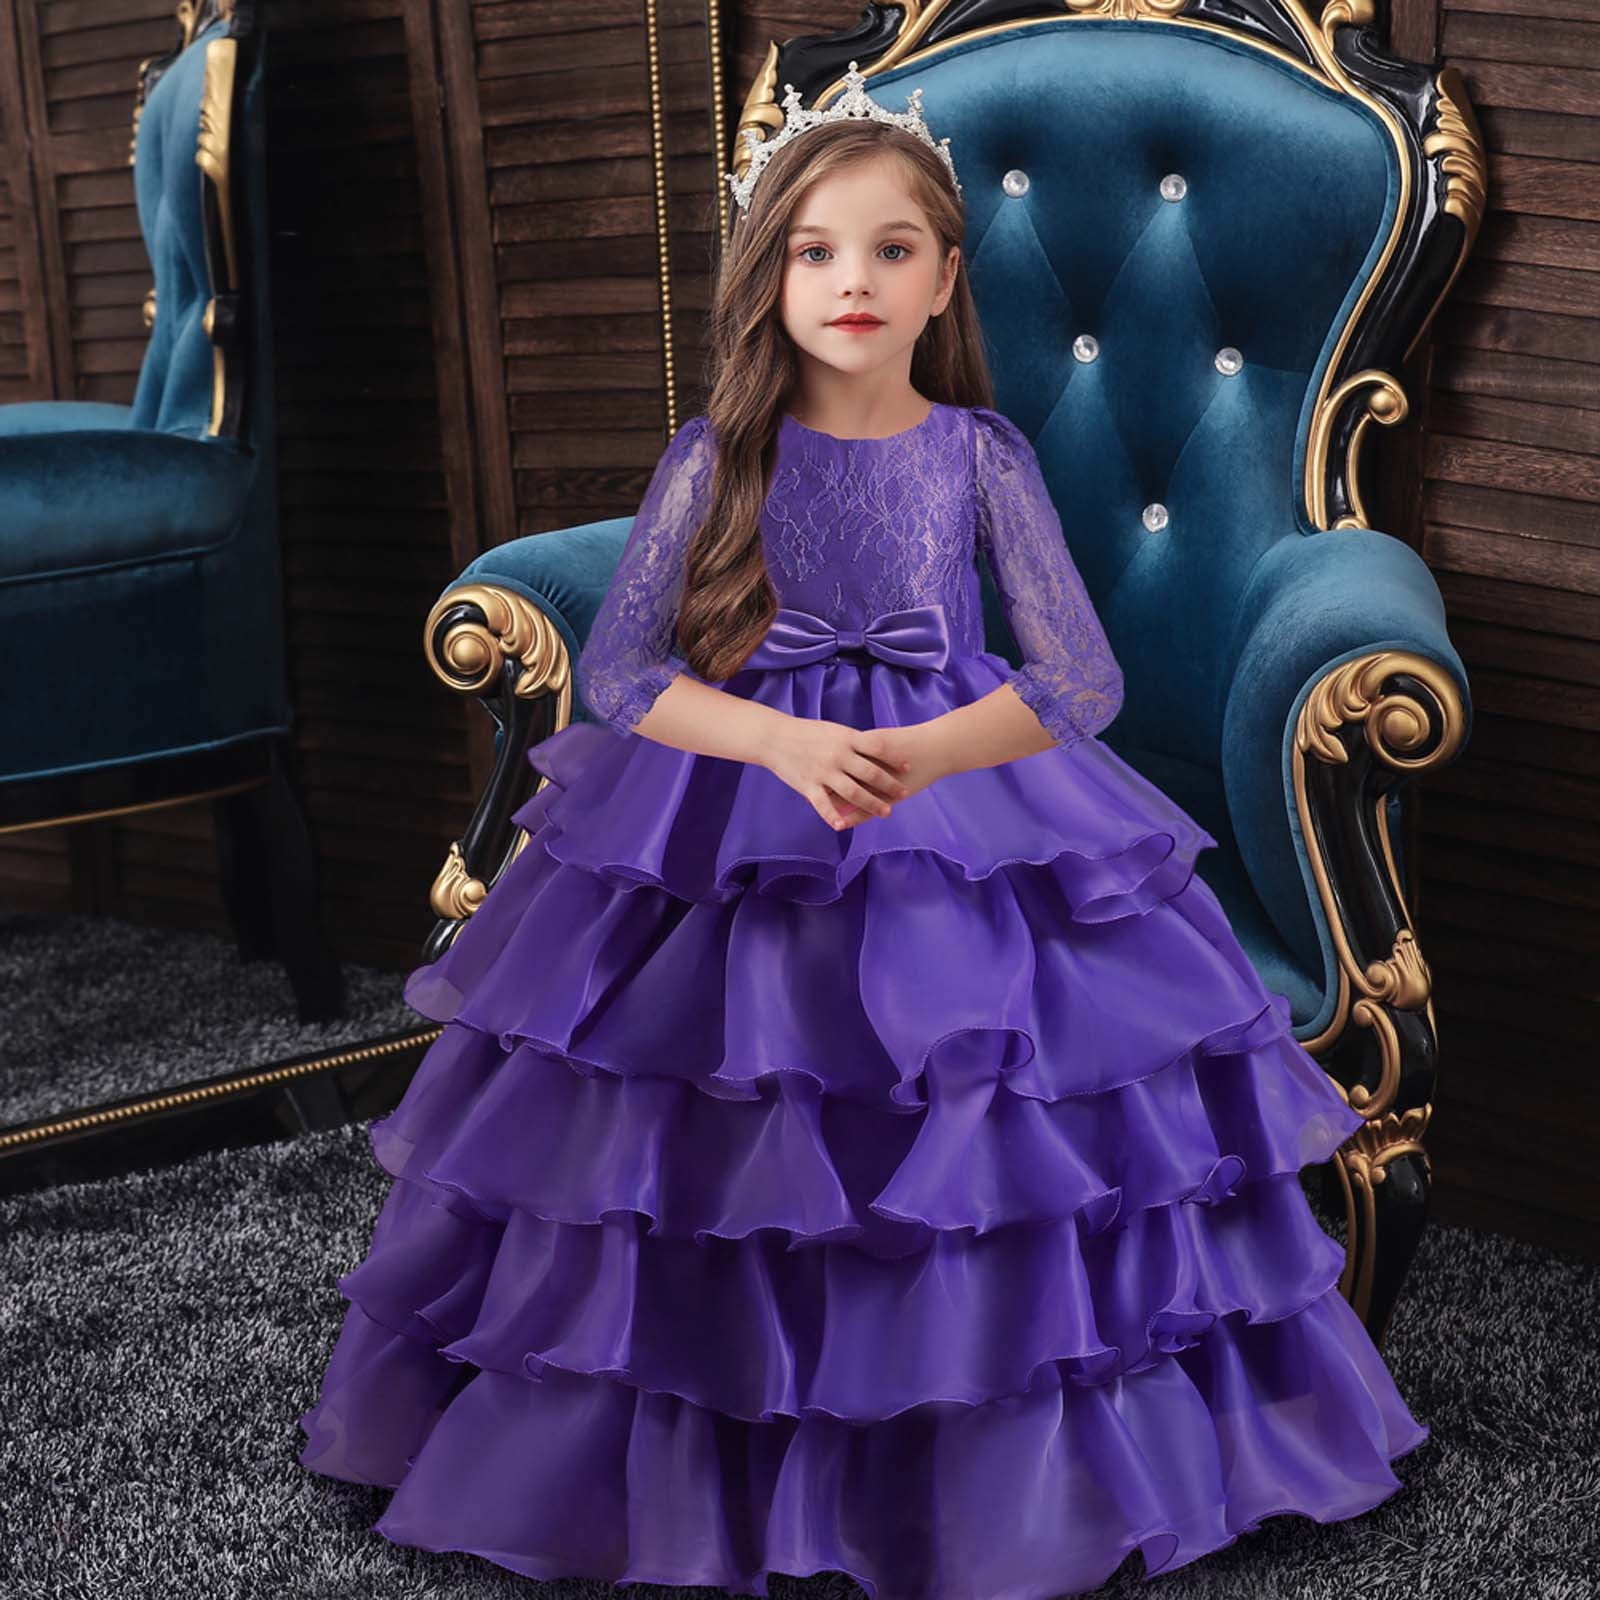 Princess Dresses for Girls